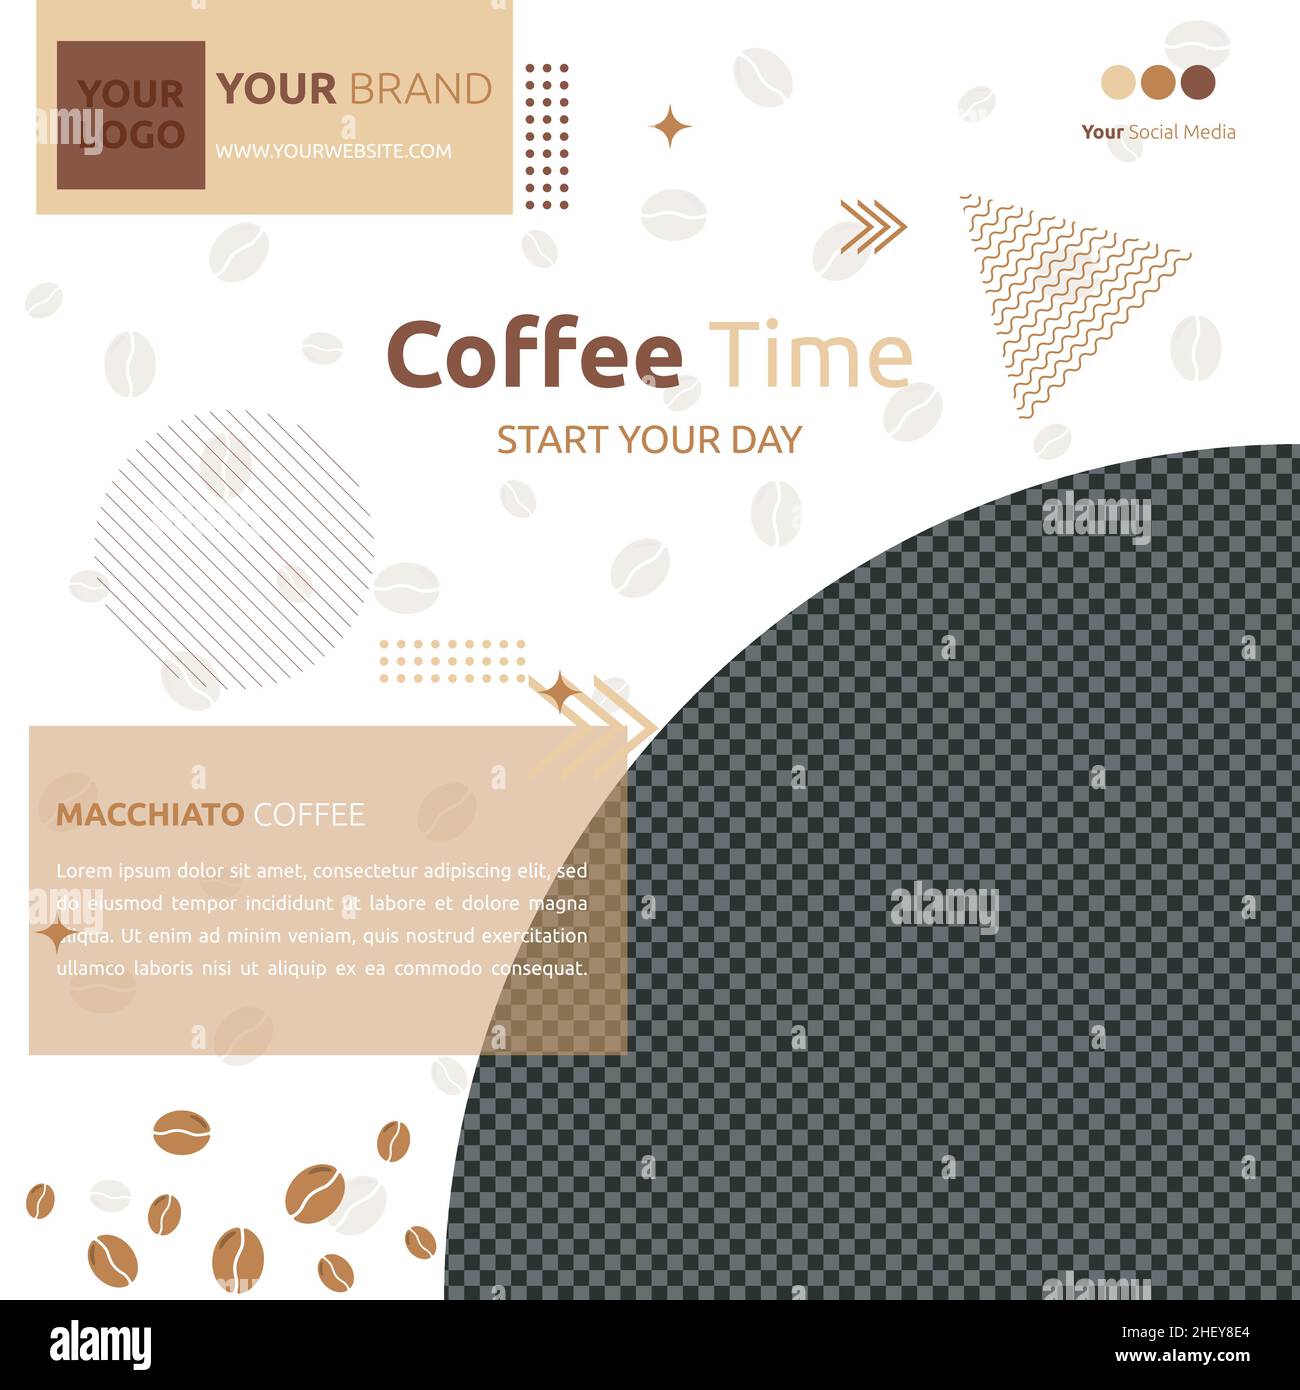 Coffee Cafe Social Media Post Template promozione Online Photo Space Illustrazione Vettoriale